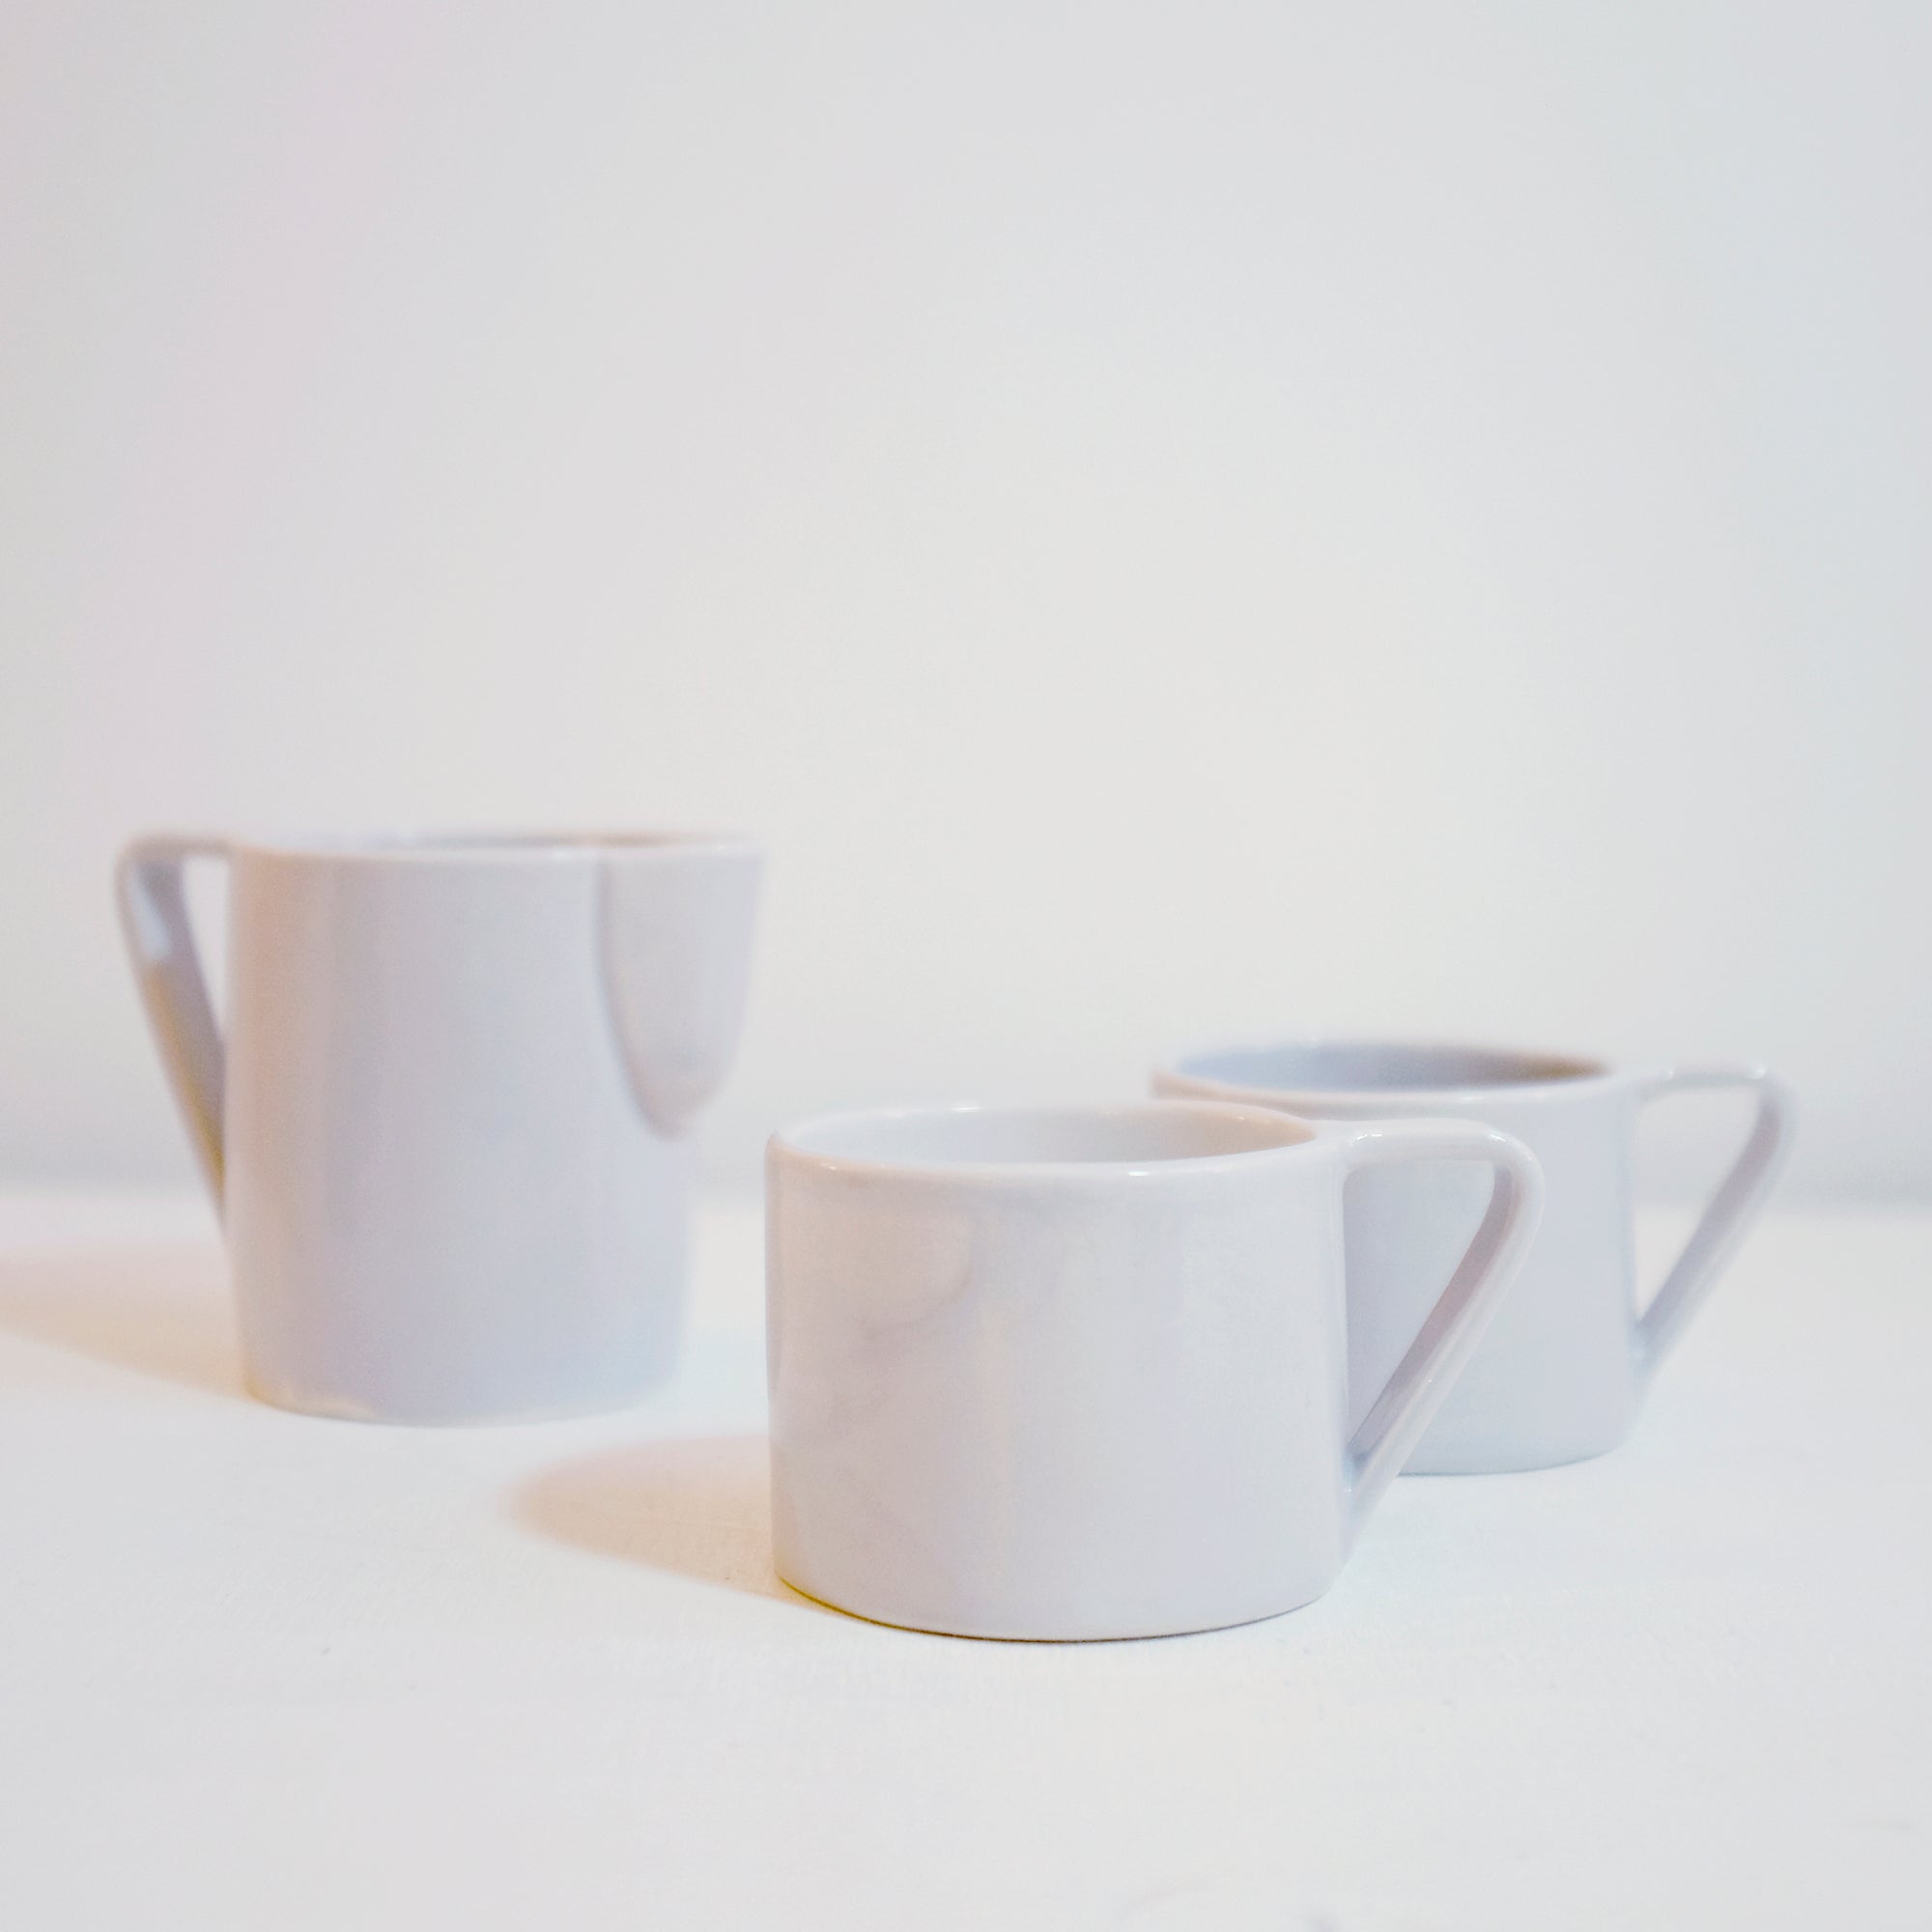 Milano Nebbia Set of 4 Cappuccino cups - Alternative view 1